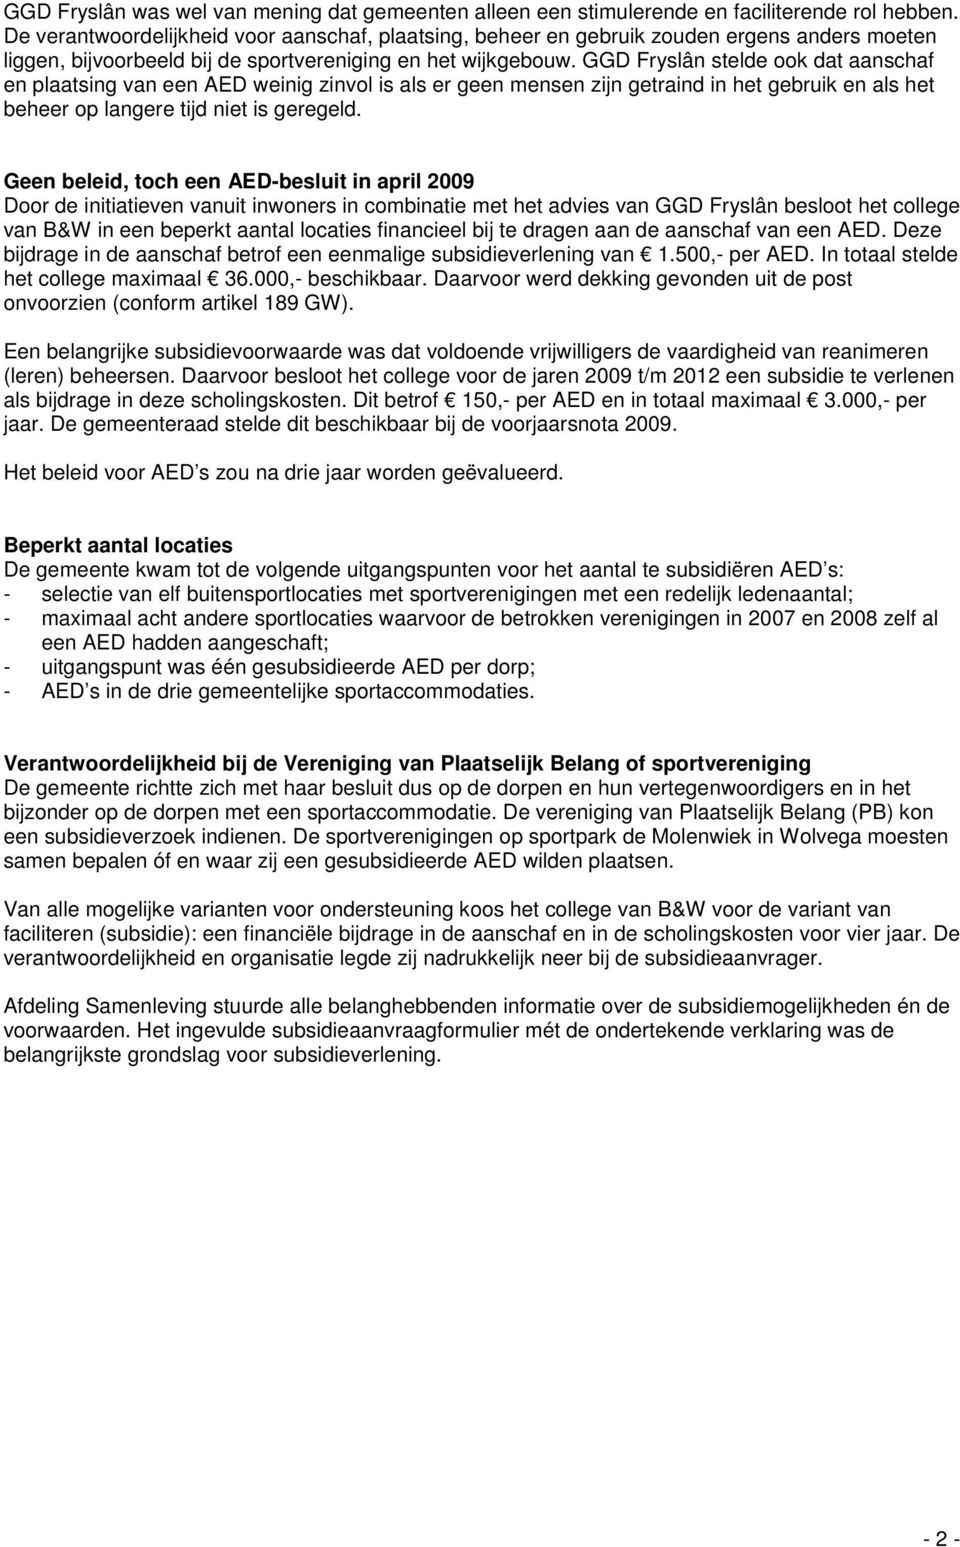 GGD Fryslân stelde ook dat aanschaf en plaatsing van een AED weinig zinvol is als er geen mensen zijn getraind in het gebruik en als het beheer op langere tijd niet is geregeld.